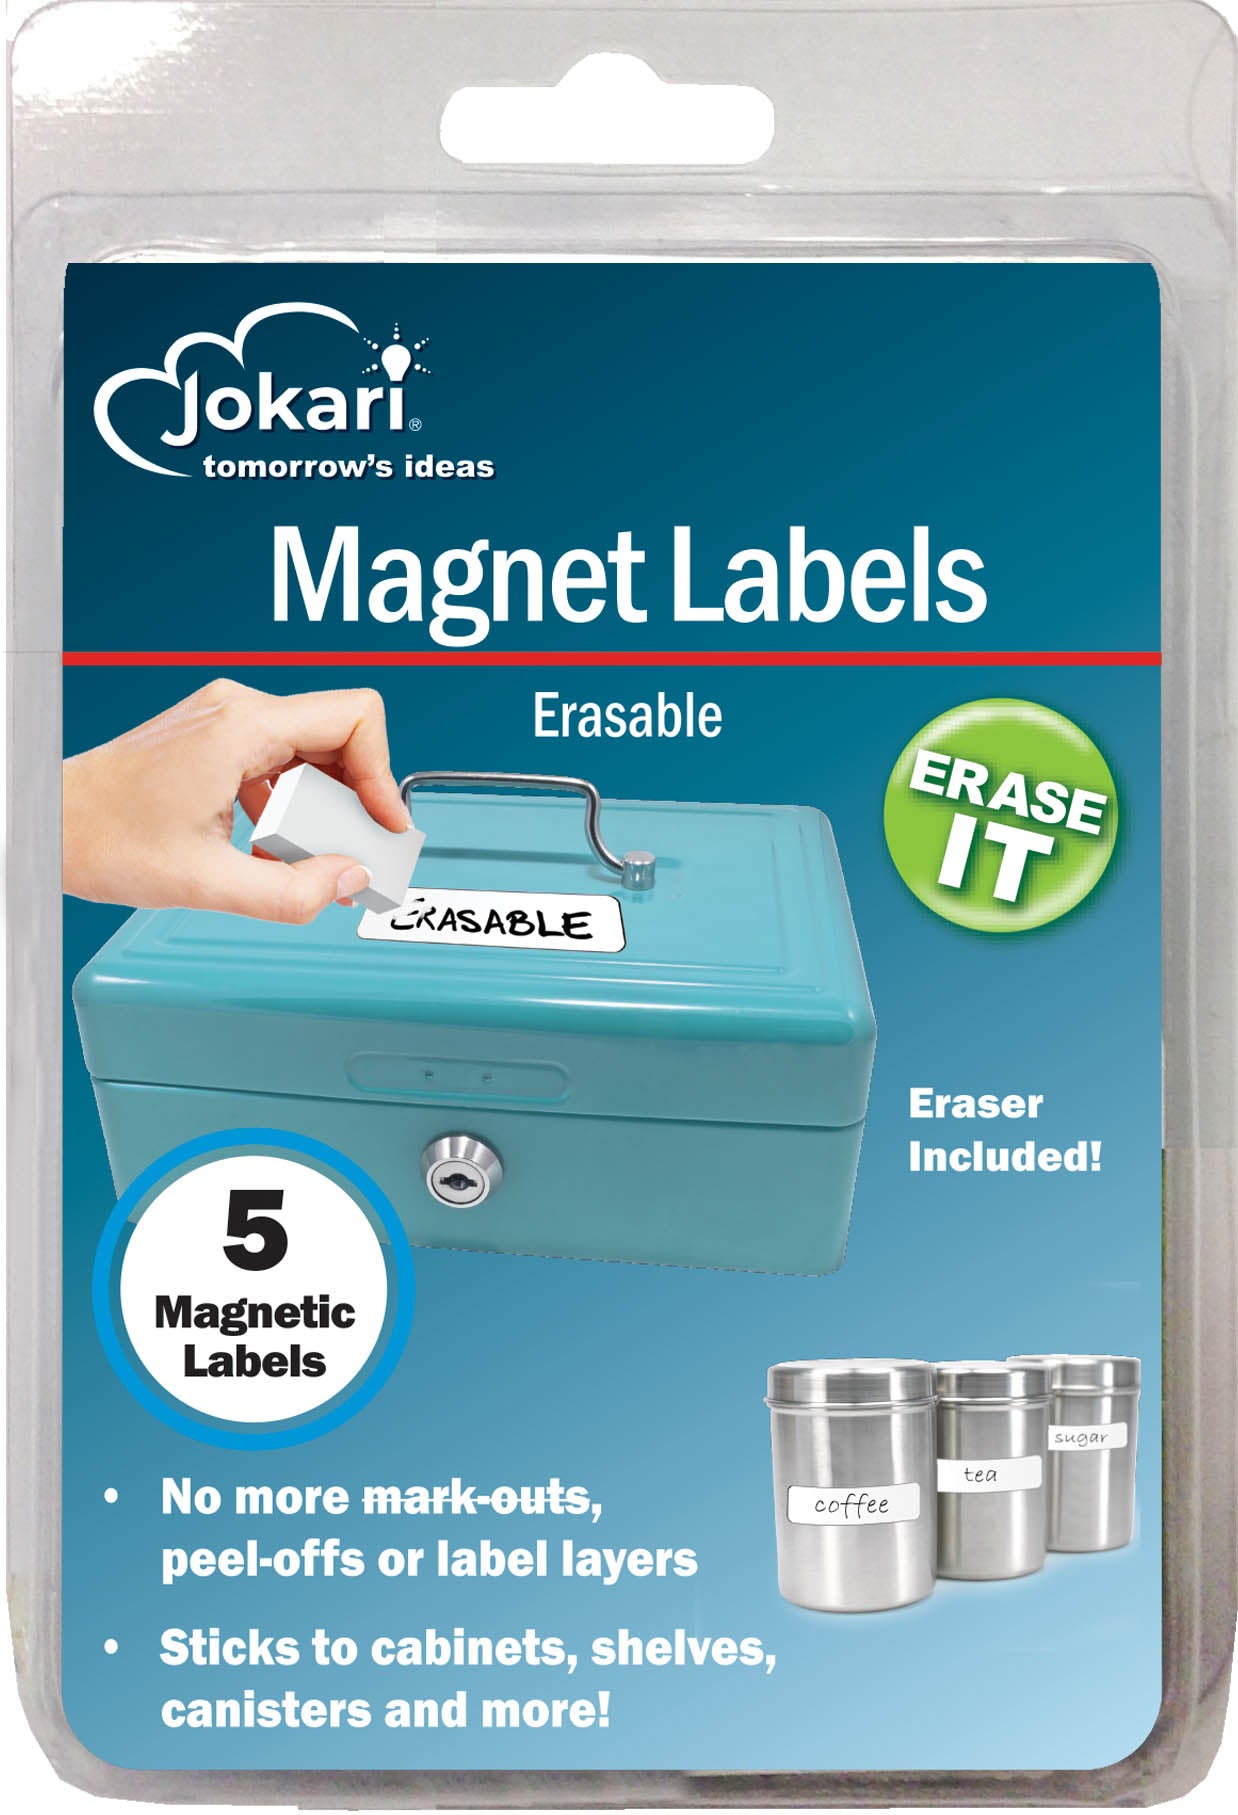 Erasable Magnet Labels